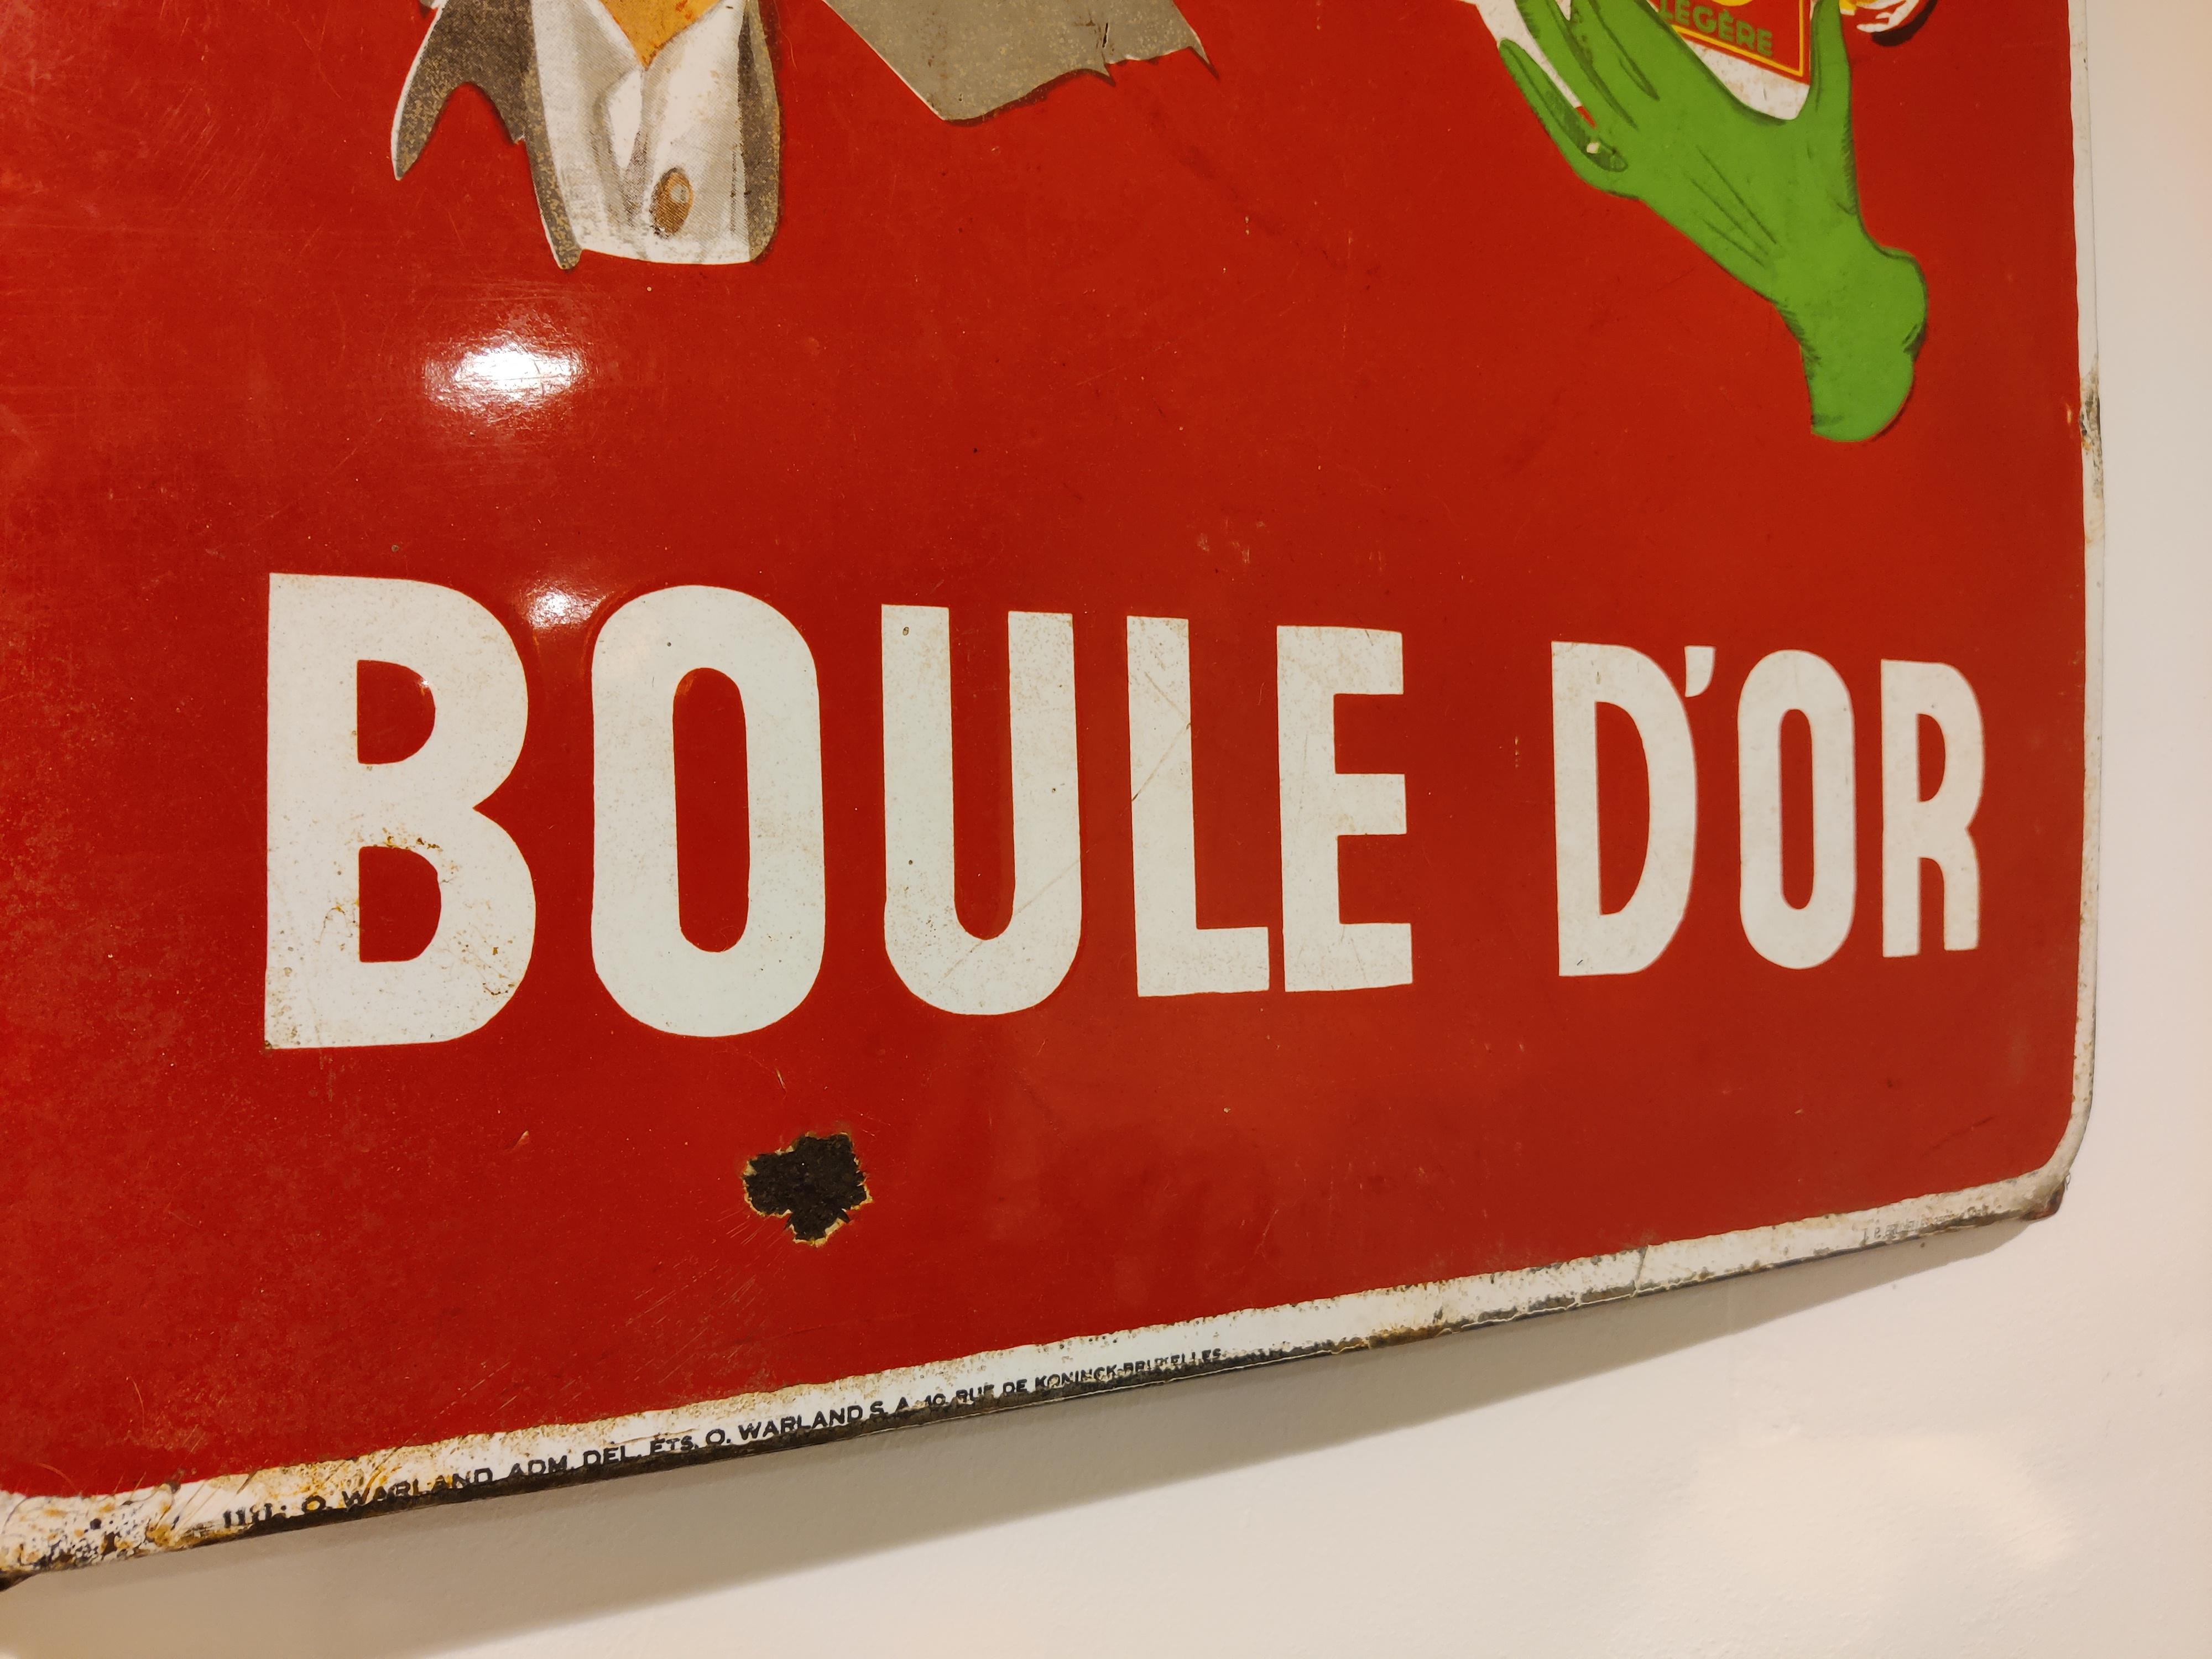 Belgian Boule D'or Enamel Sign, 1953, Vintage Advertising